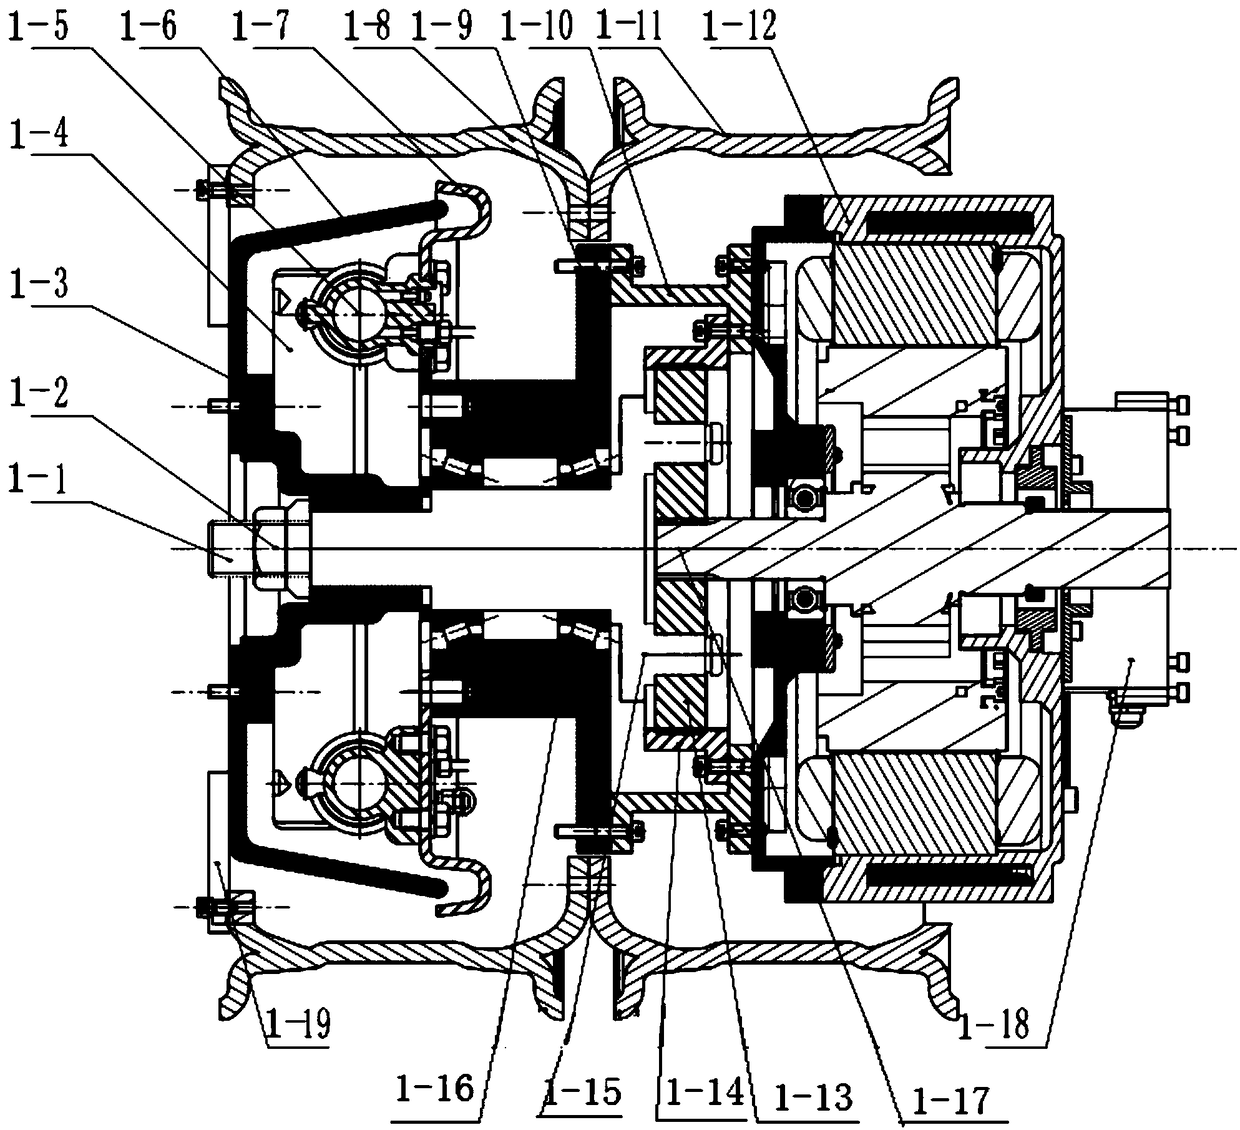 Hub motor integrated system